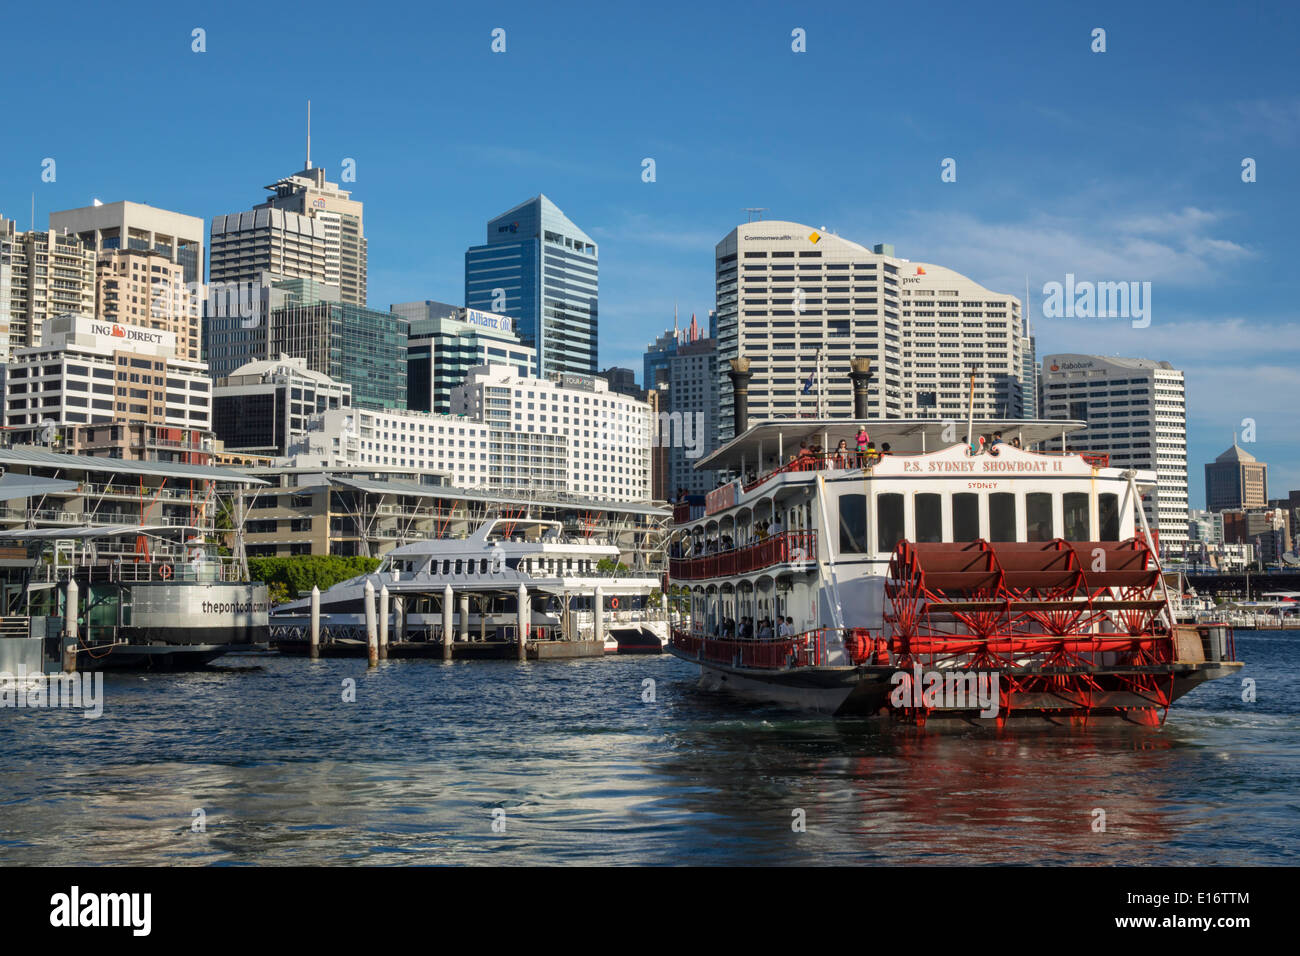 Sydney Australien, Darling Harbour, Hafen, Passagierterminal, Wolkenkratzer, Skyline der Stadt, P.S. Sydney Showboat II, Tretboot, AU140311183 Stockfoto